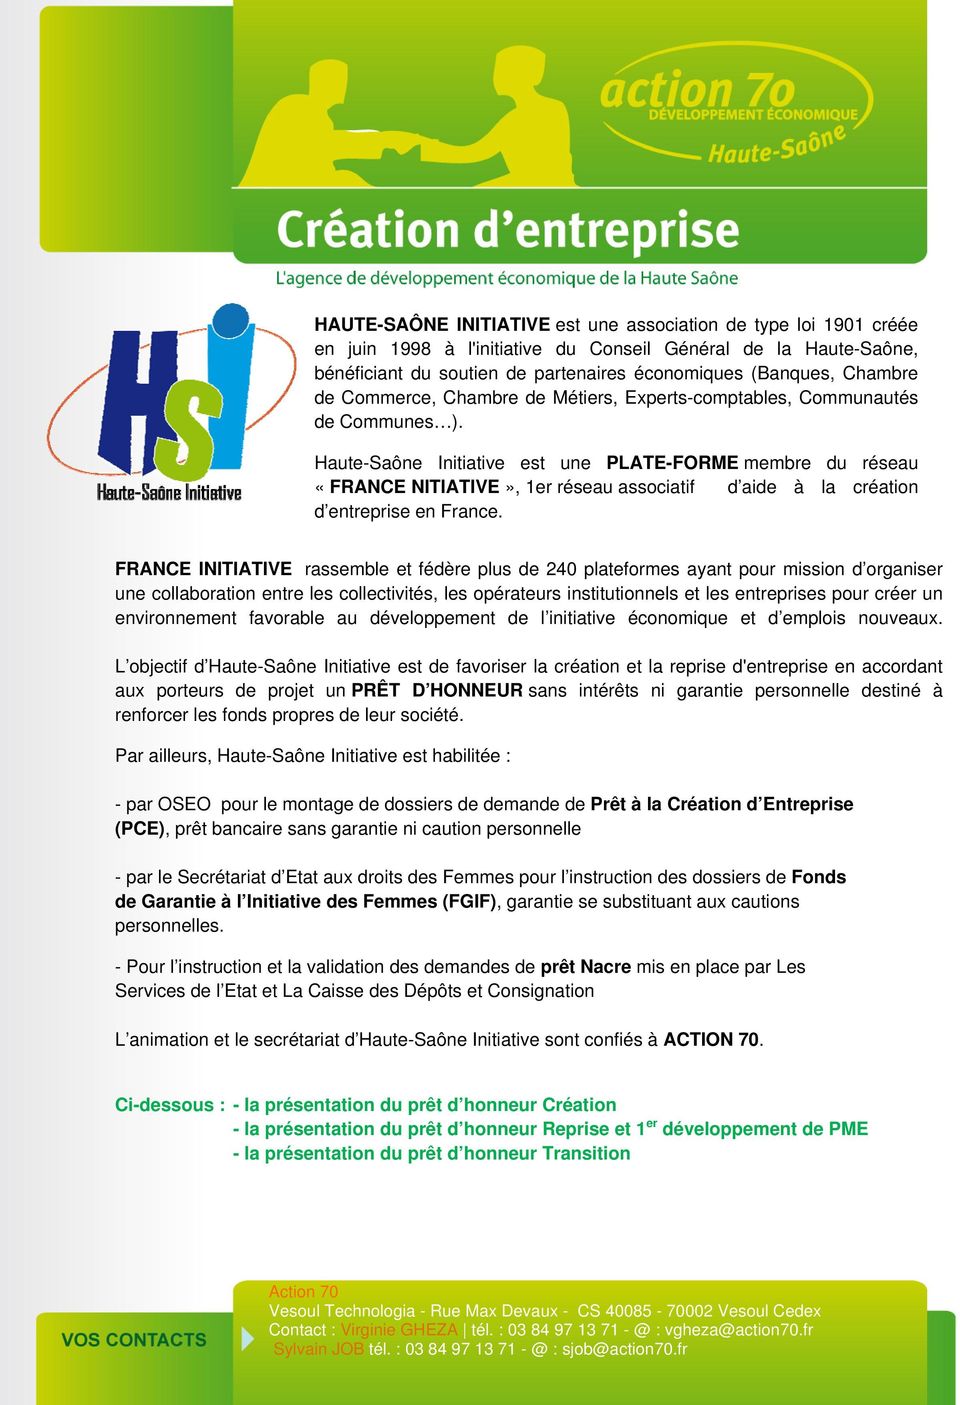 Haute-Saône Initiative est une PLATE-FORME membre du réseau «FRANCE NITIATIVE», 1er réseau associatif d aide à la création d entreprise en France.